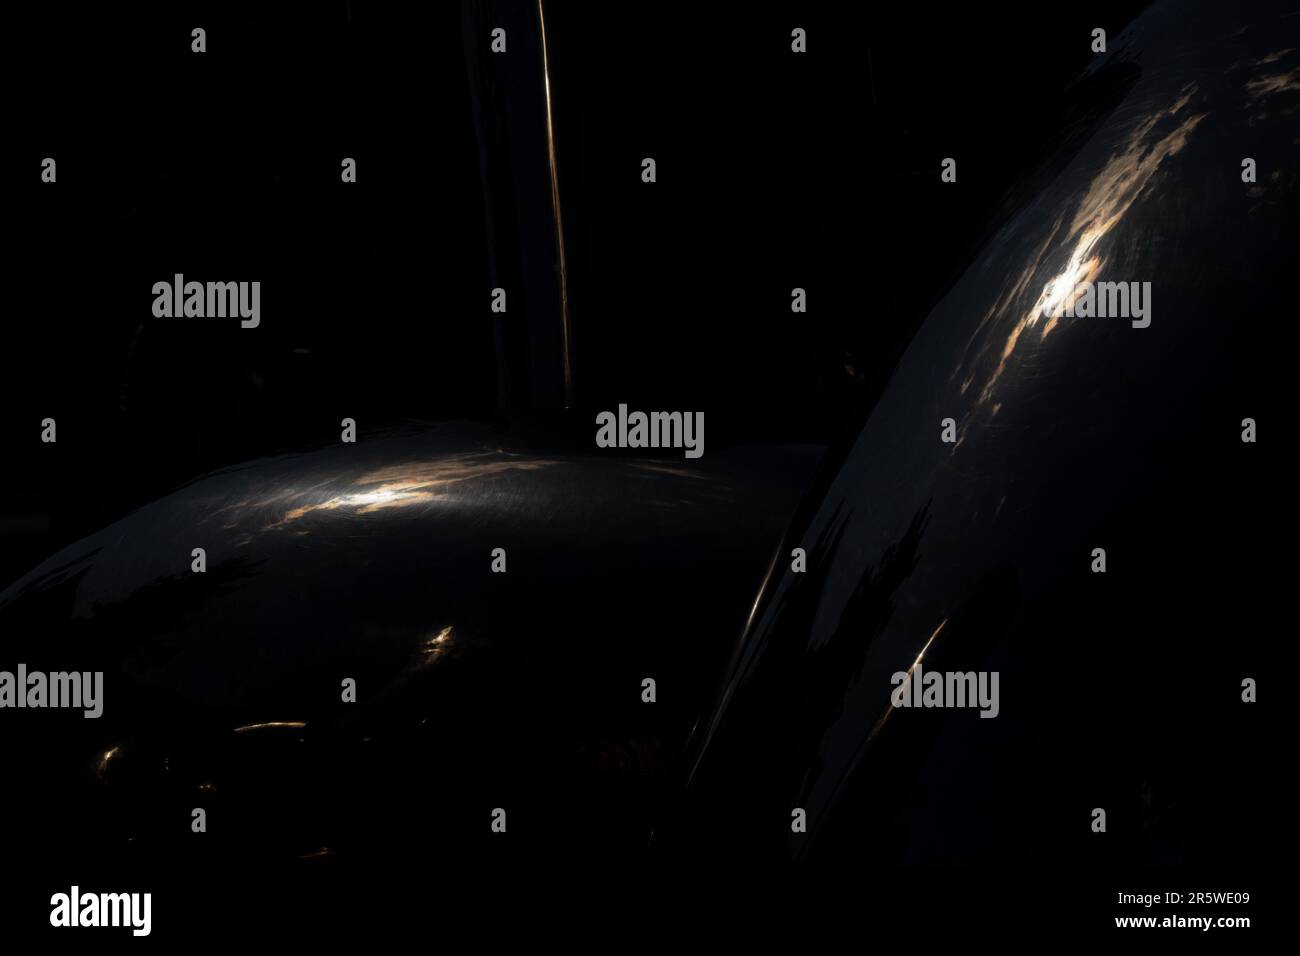 Solarchaotische Blendung auf schwarzem Hintergrund in Spiegelreflexion, Lichtstrahlen auf schwarzem, abstraktem Hintergrund Stockfoto